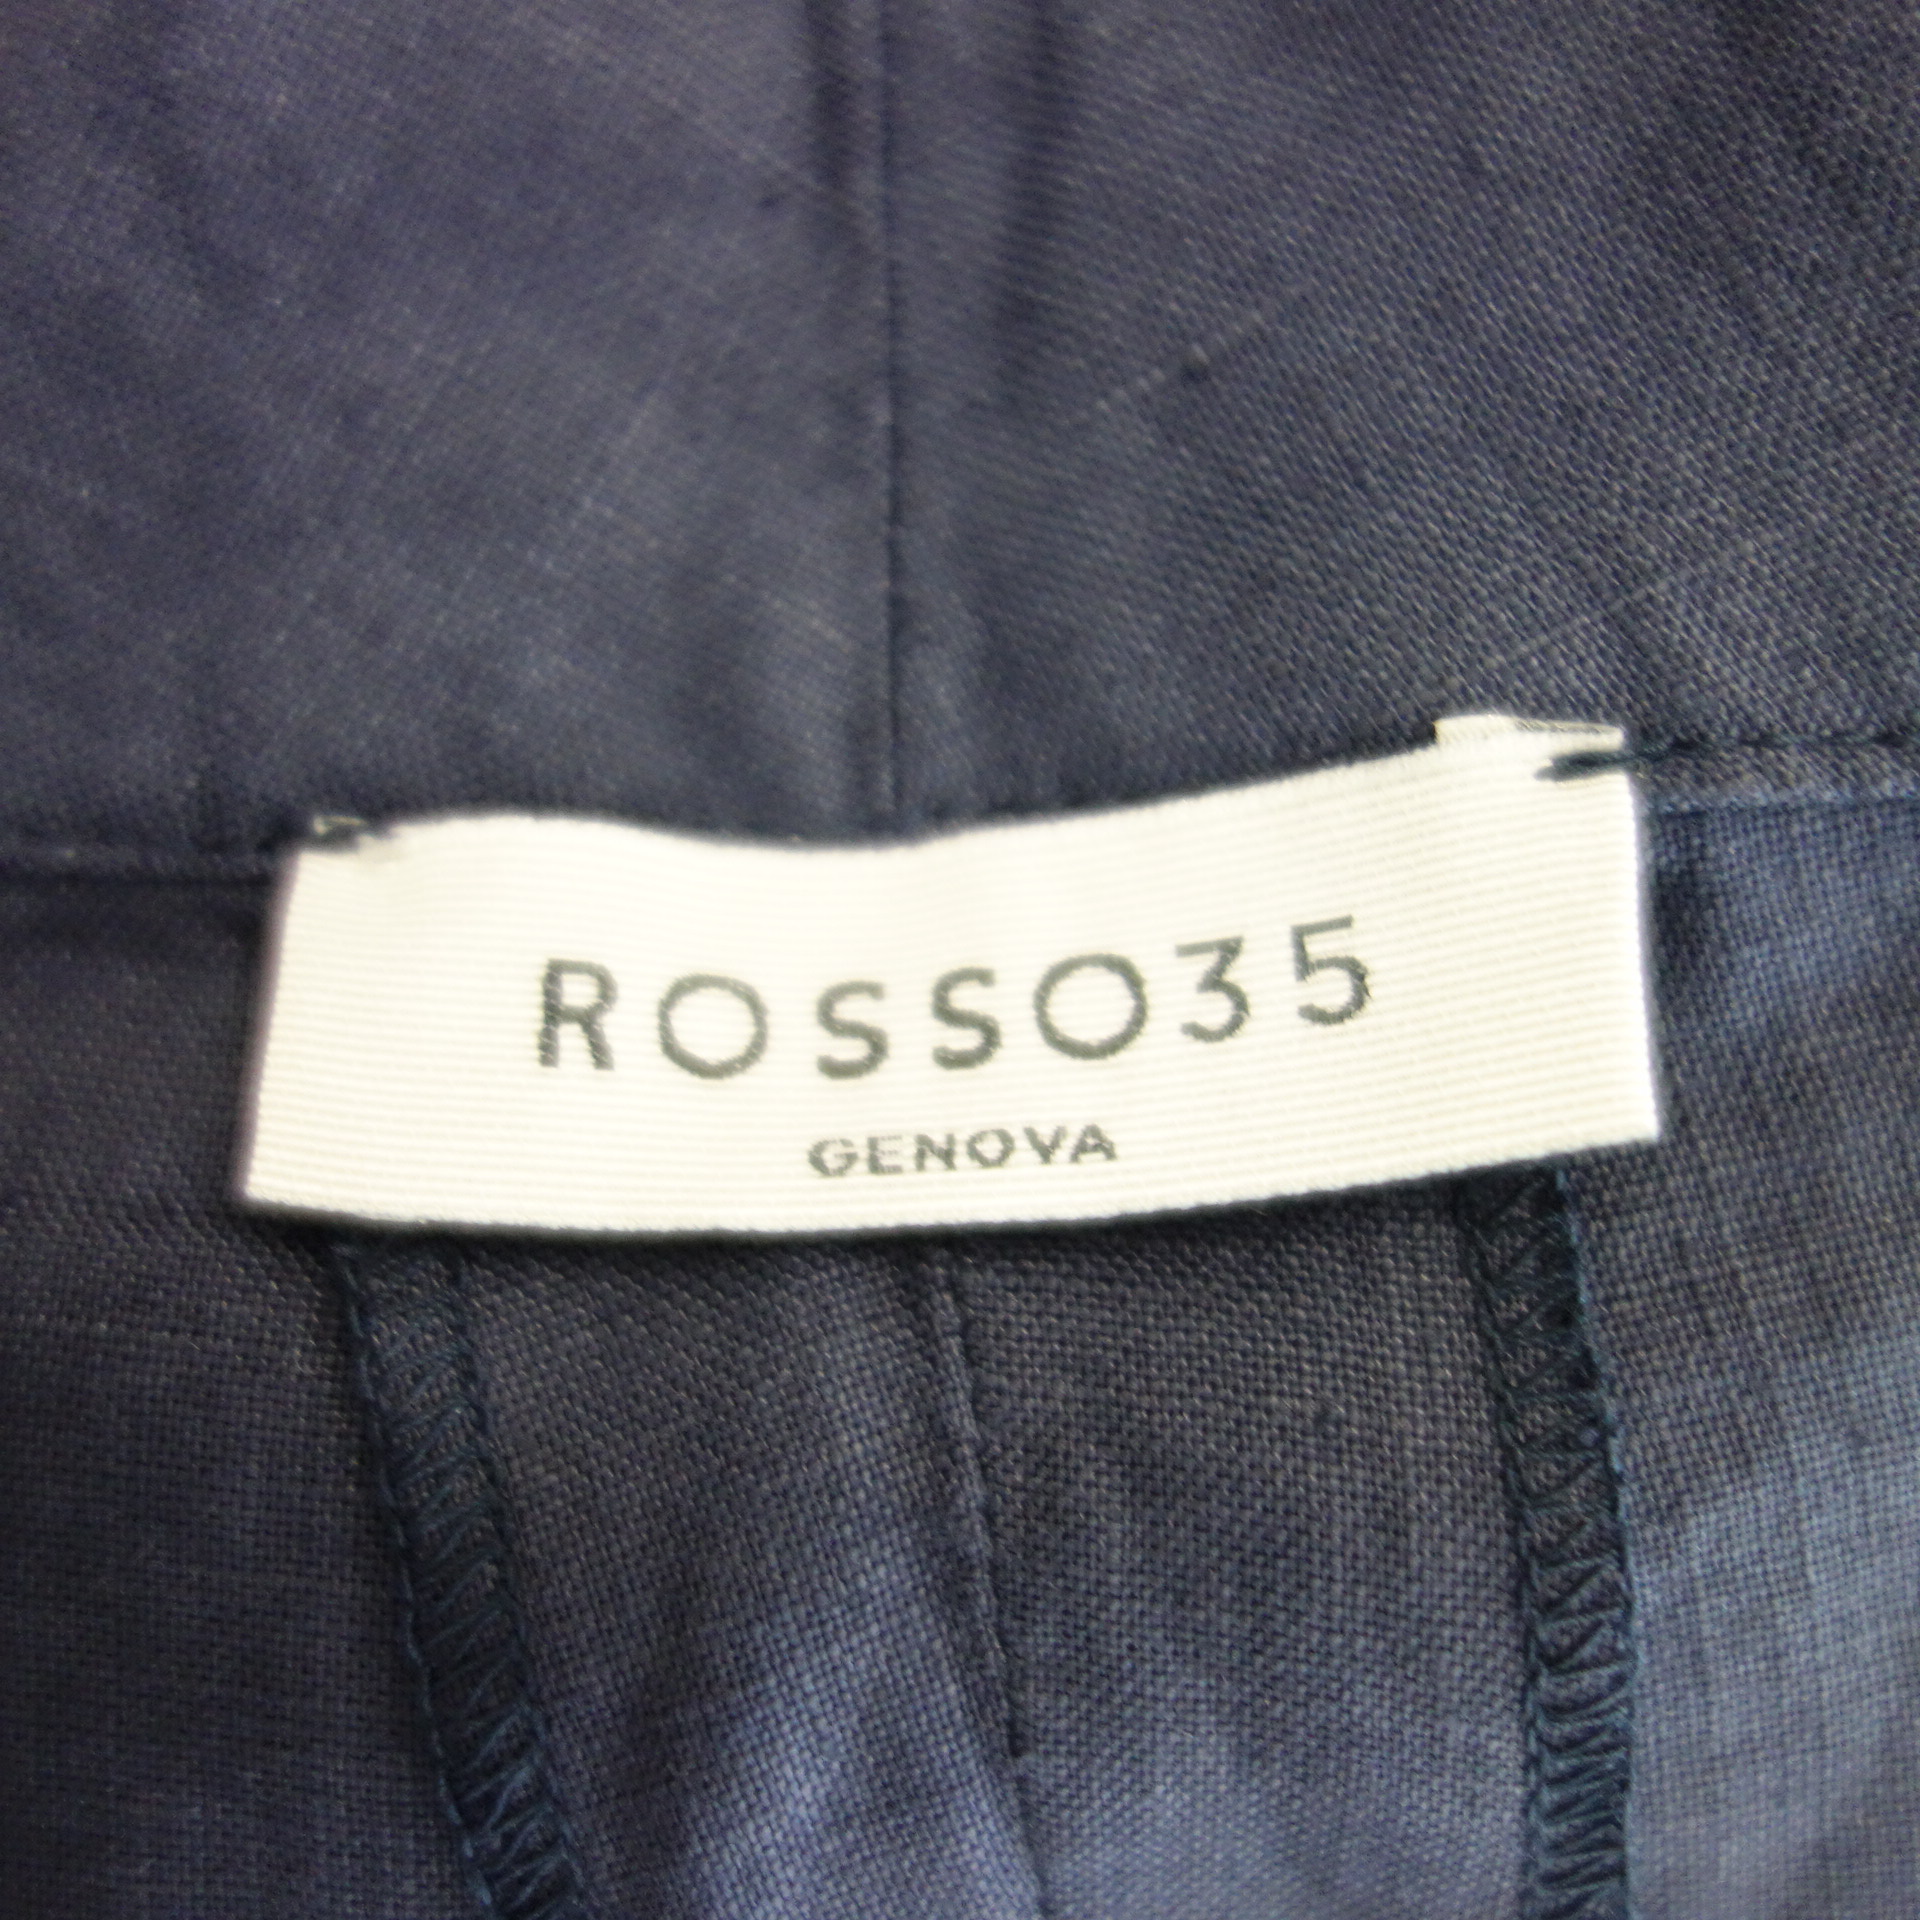 ROSSO35 Damen Shorts Bermuda Dunkelblau 100% Leinen IT 50 DE 44